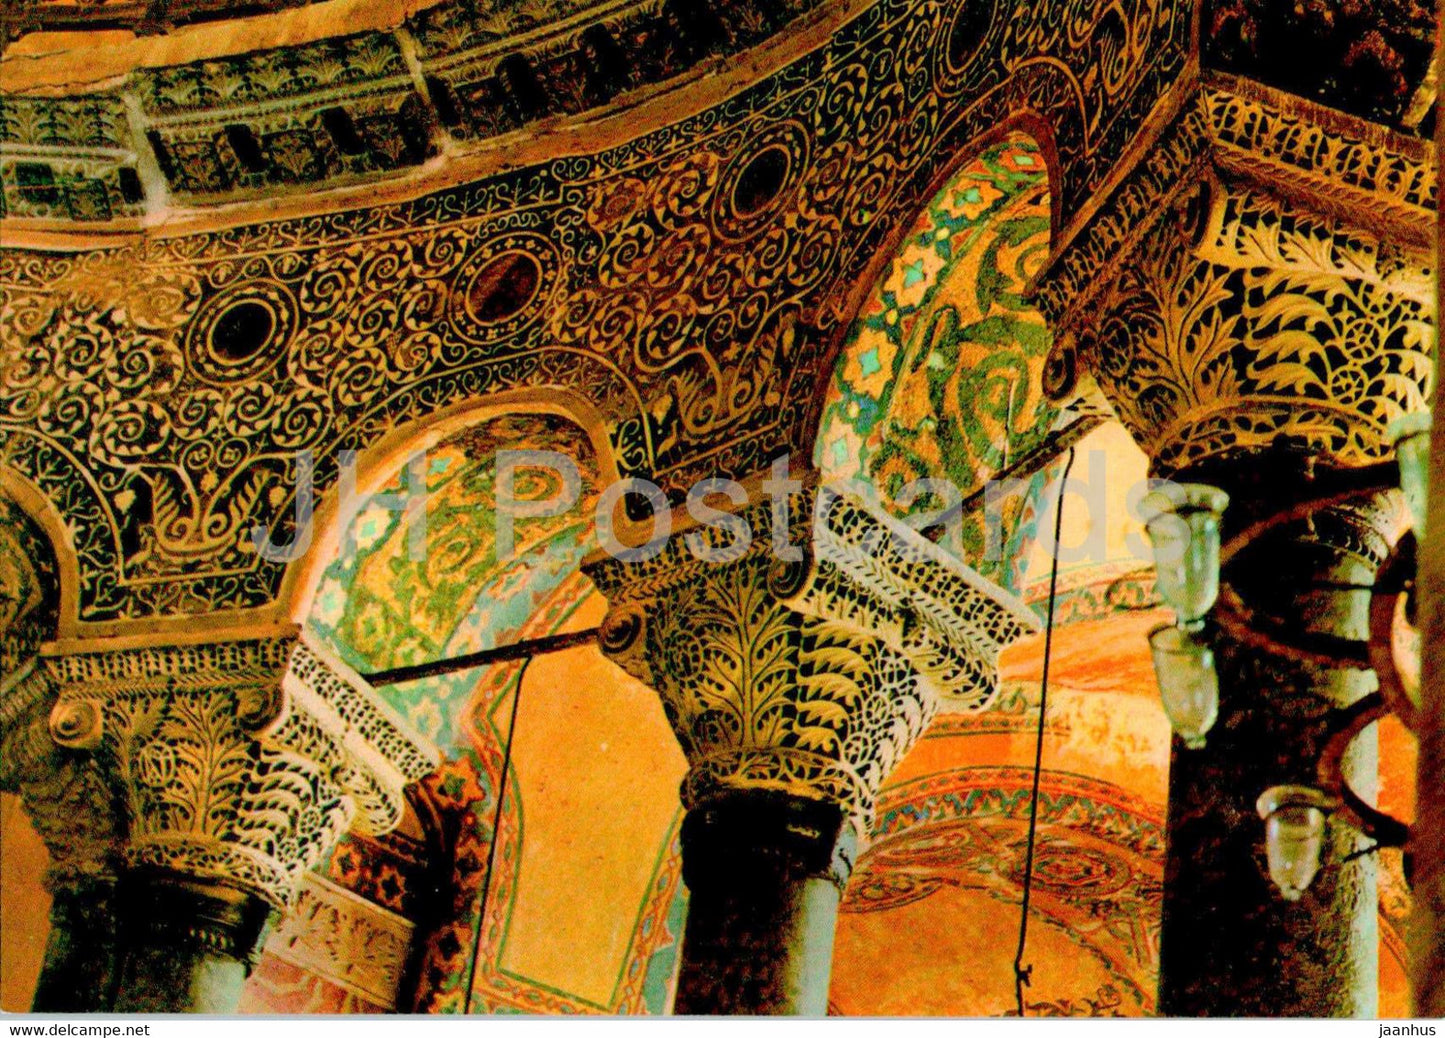 Istanbul - St Sophia Museum - Decoration on arches - 260 - Turkey - unused - JH Postcards